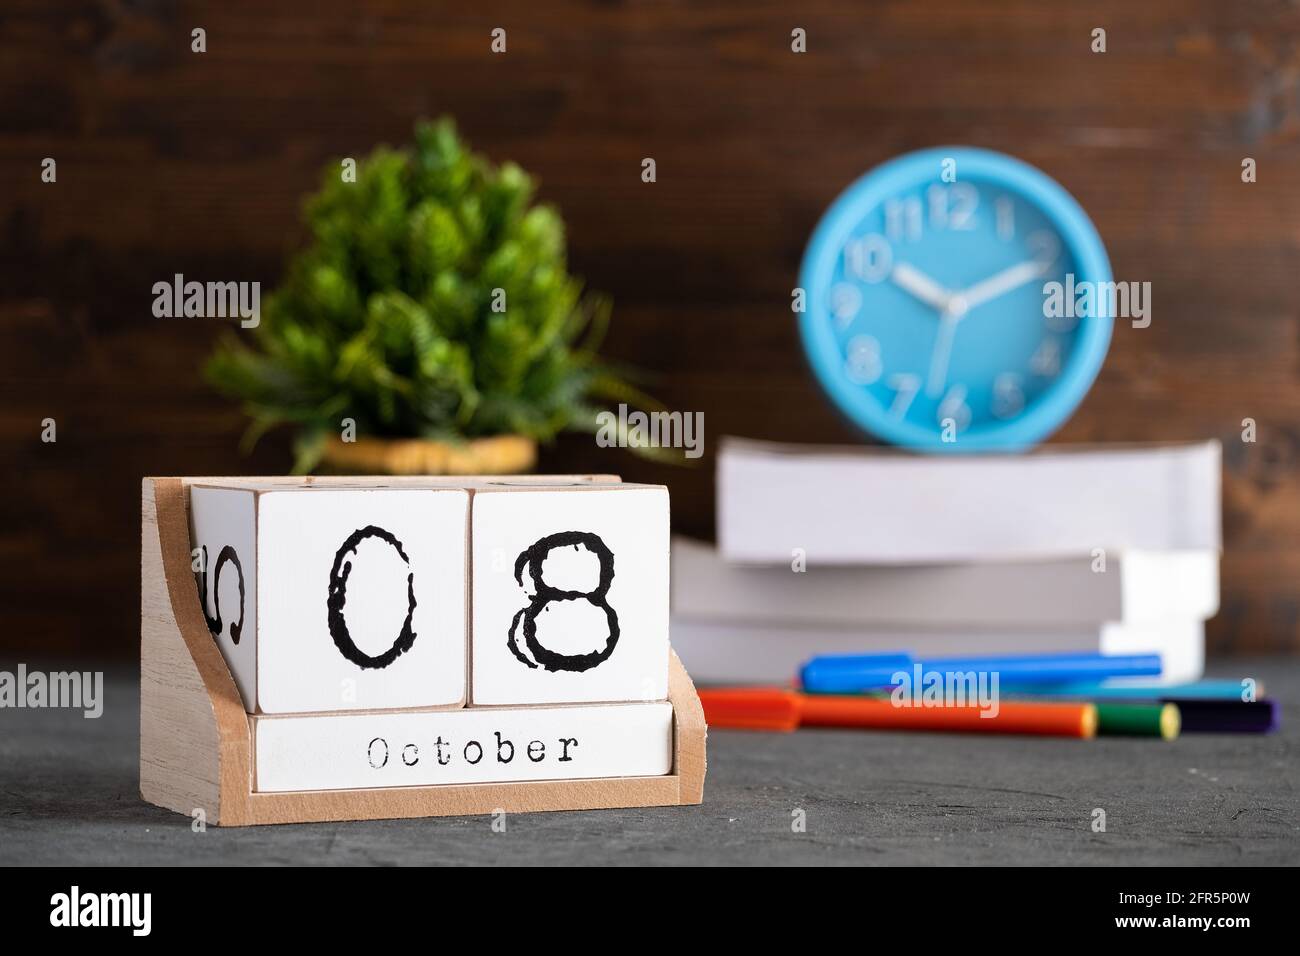 Le 08 octobre. Octobre 08 calendrier cube en bois avec objets flous sur fond. Banque D'Images